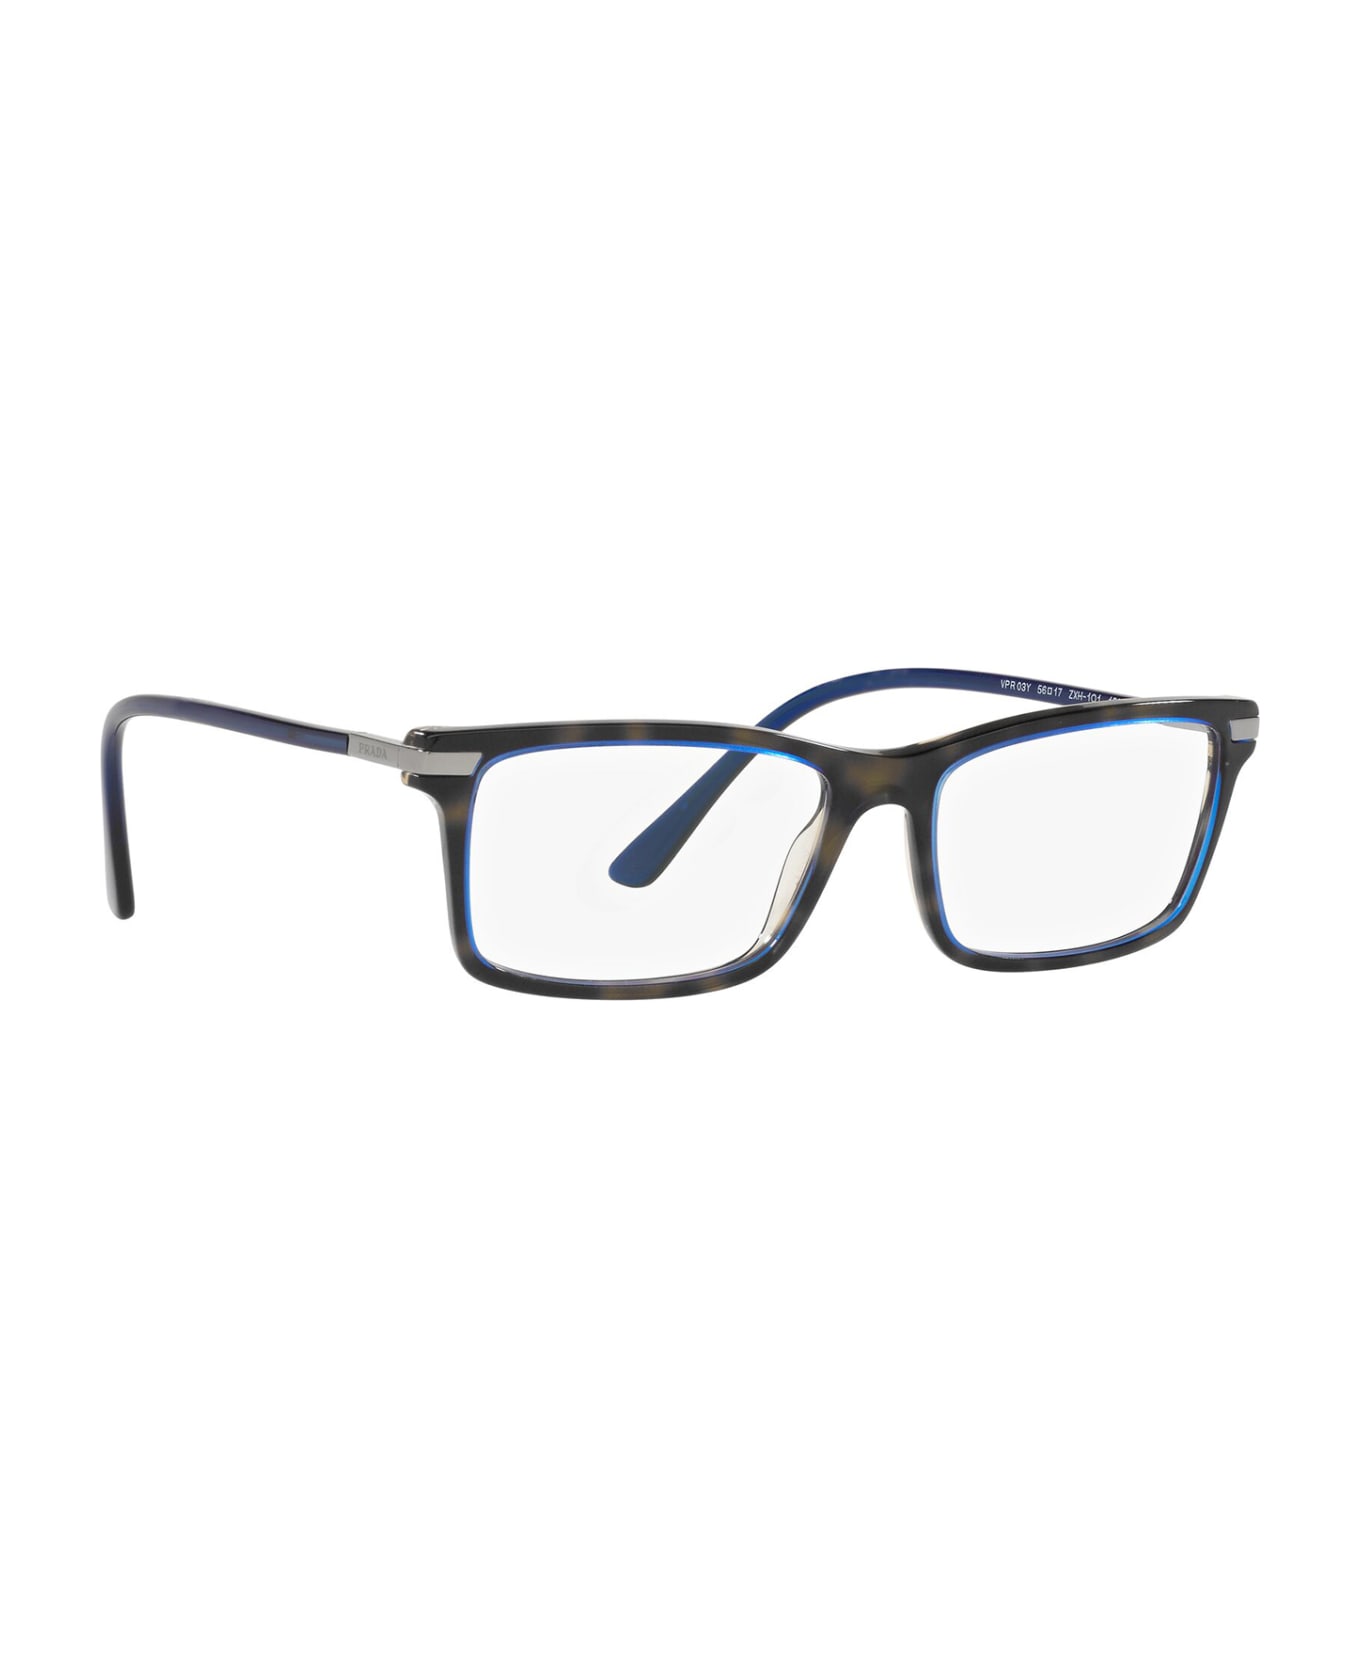 Prada Eyewear Pr 03yv Denim Tortoise Glasses - Denim Tortoise